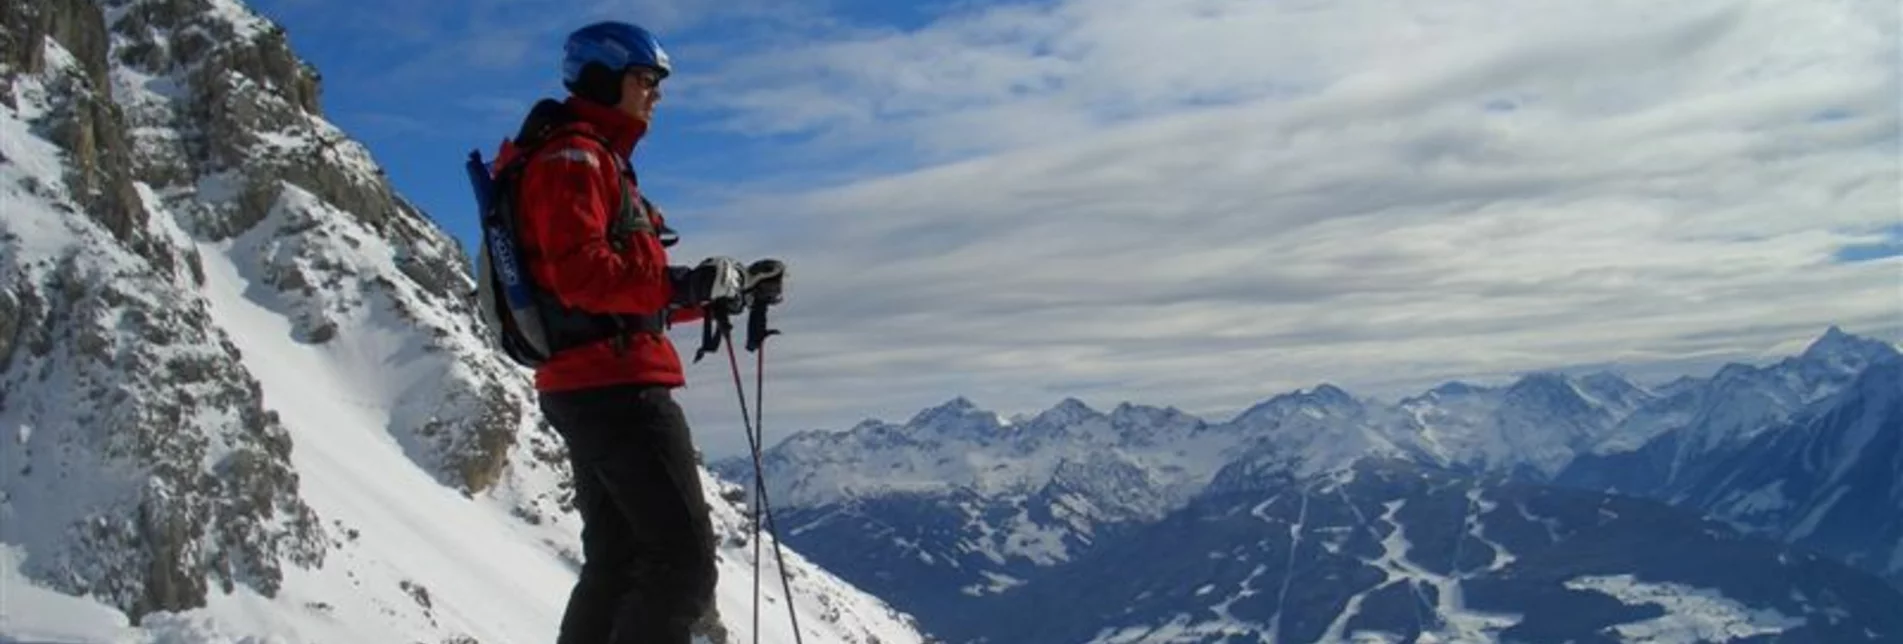 Backcountry Skiing Freeride-Abfahrt Edelgrieß und Kraml-Lahn - Touren-Impression #1 | © Erlebnisregion Schladming-Dachstein